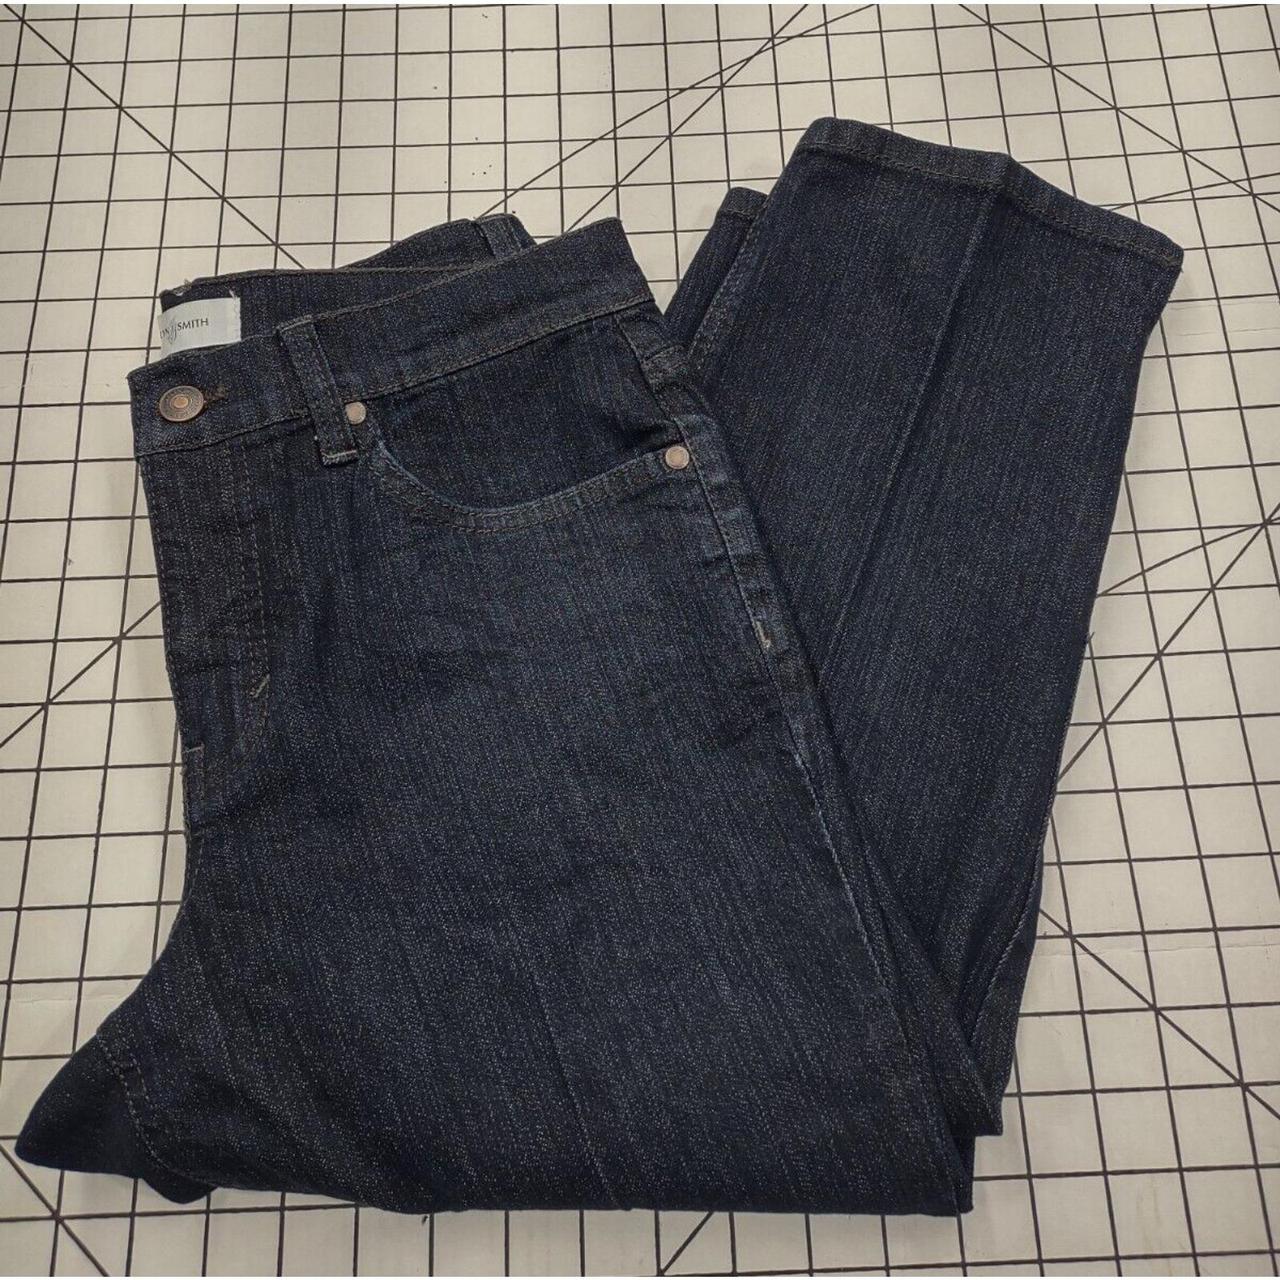 Jaclyn Smith Cropped Denim Jeans Women's 6 Dark Wash... - Depop